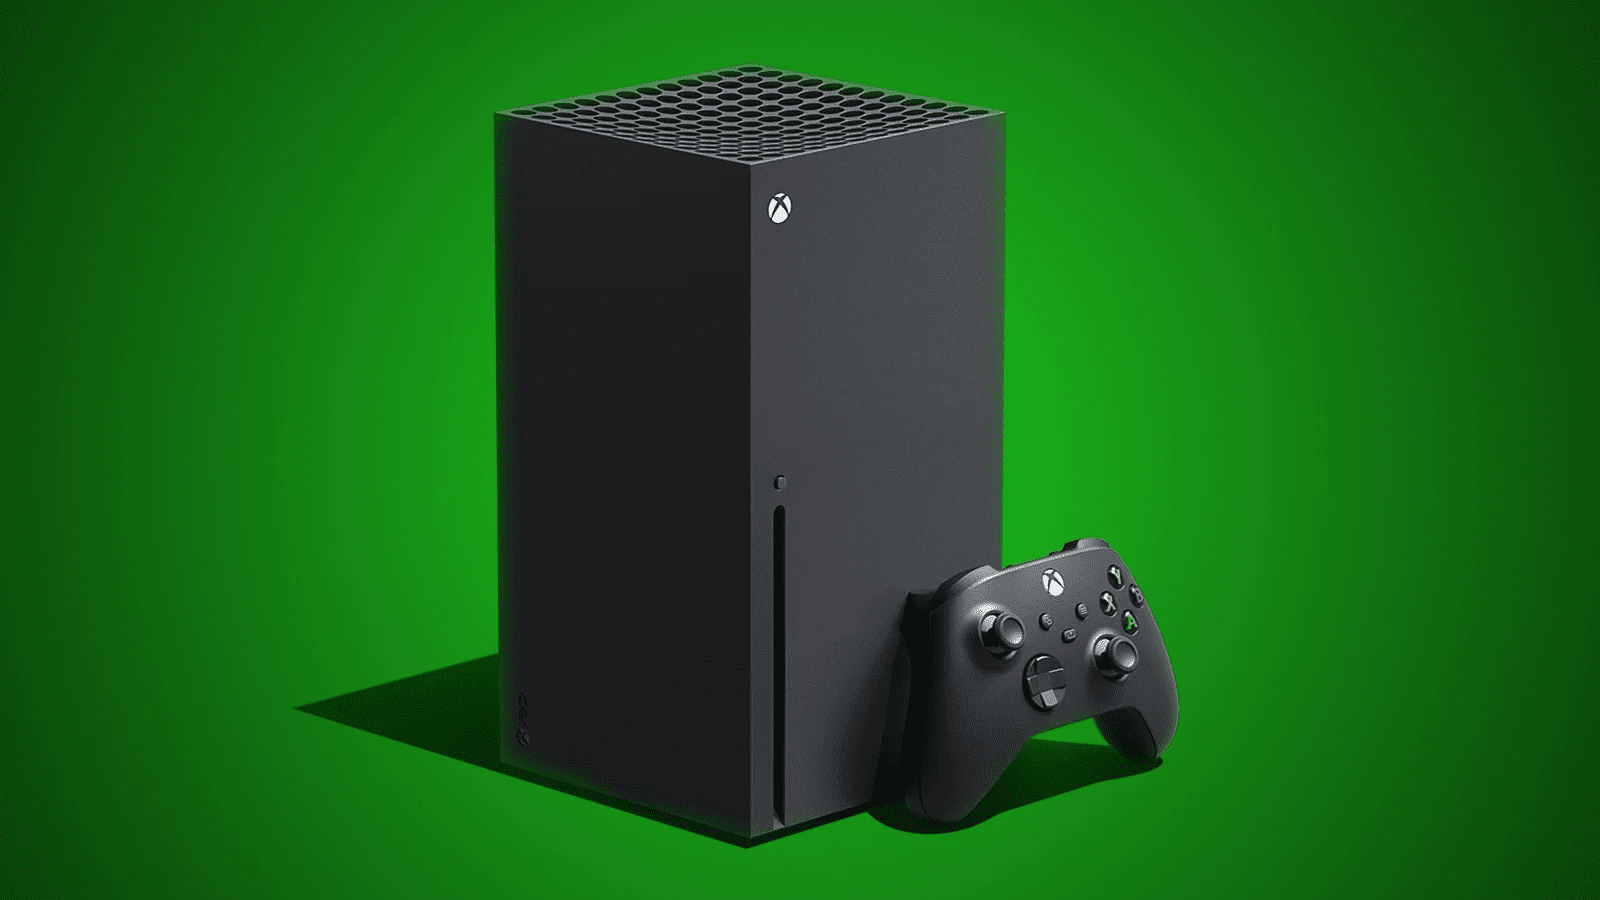 O futuro do Xbox: Microsoft fala sobre novidades de games e serviços